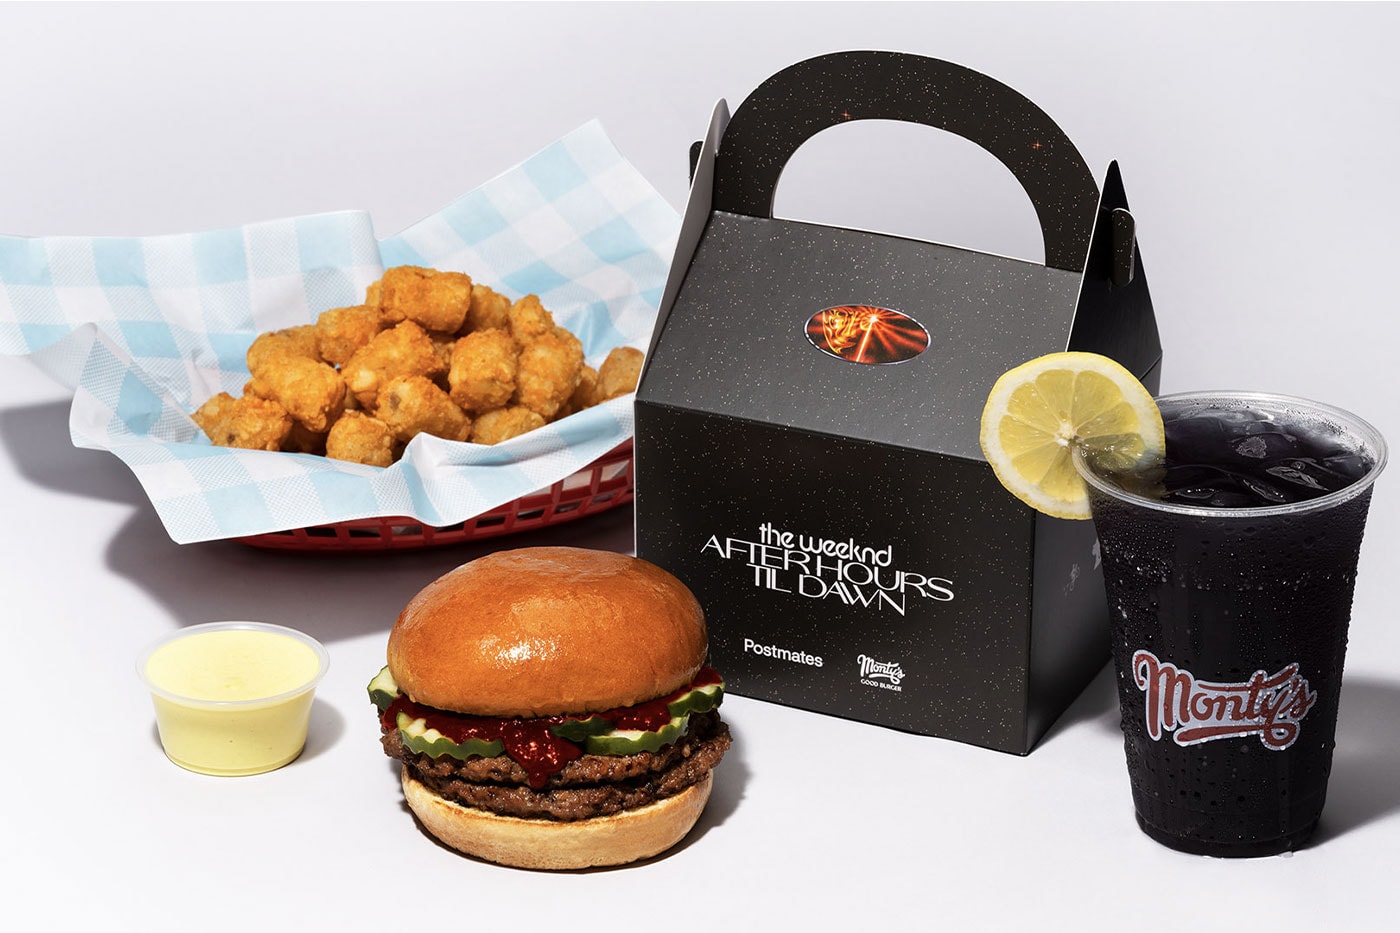 Monty’s Good Burger Postmates The Weeknd After Hours Til Dawn Menu release info